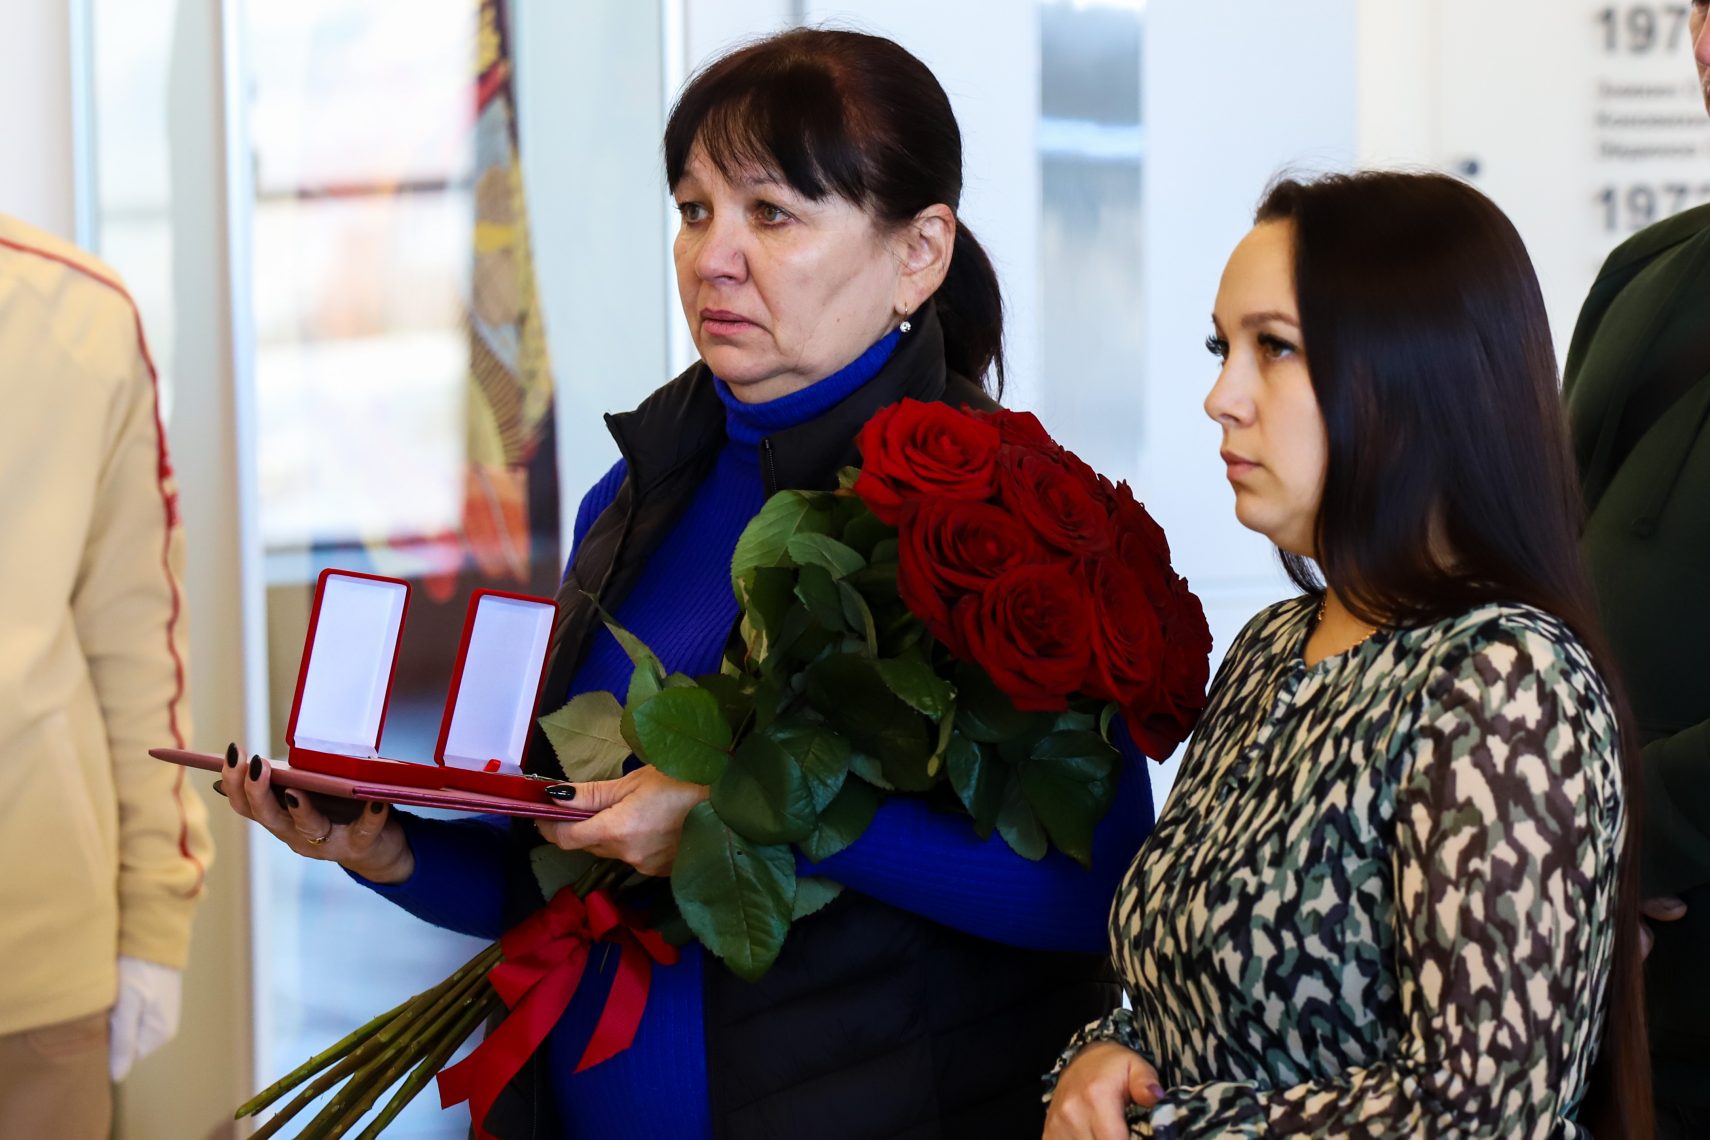 Две медали высокого достоинства вручили семье погибшего молодого бойца из Магнитогорска